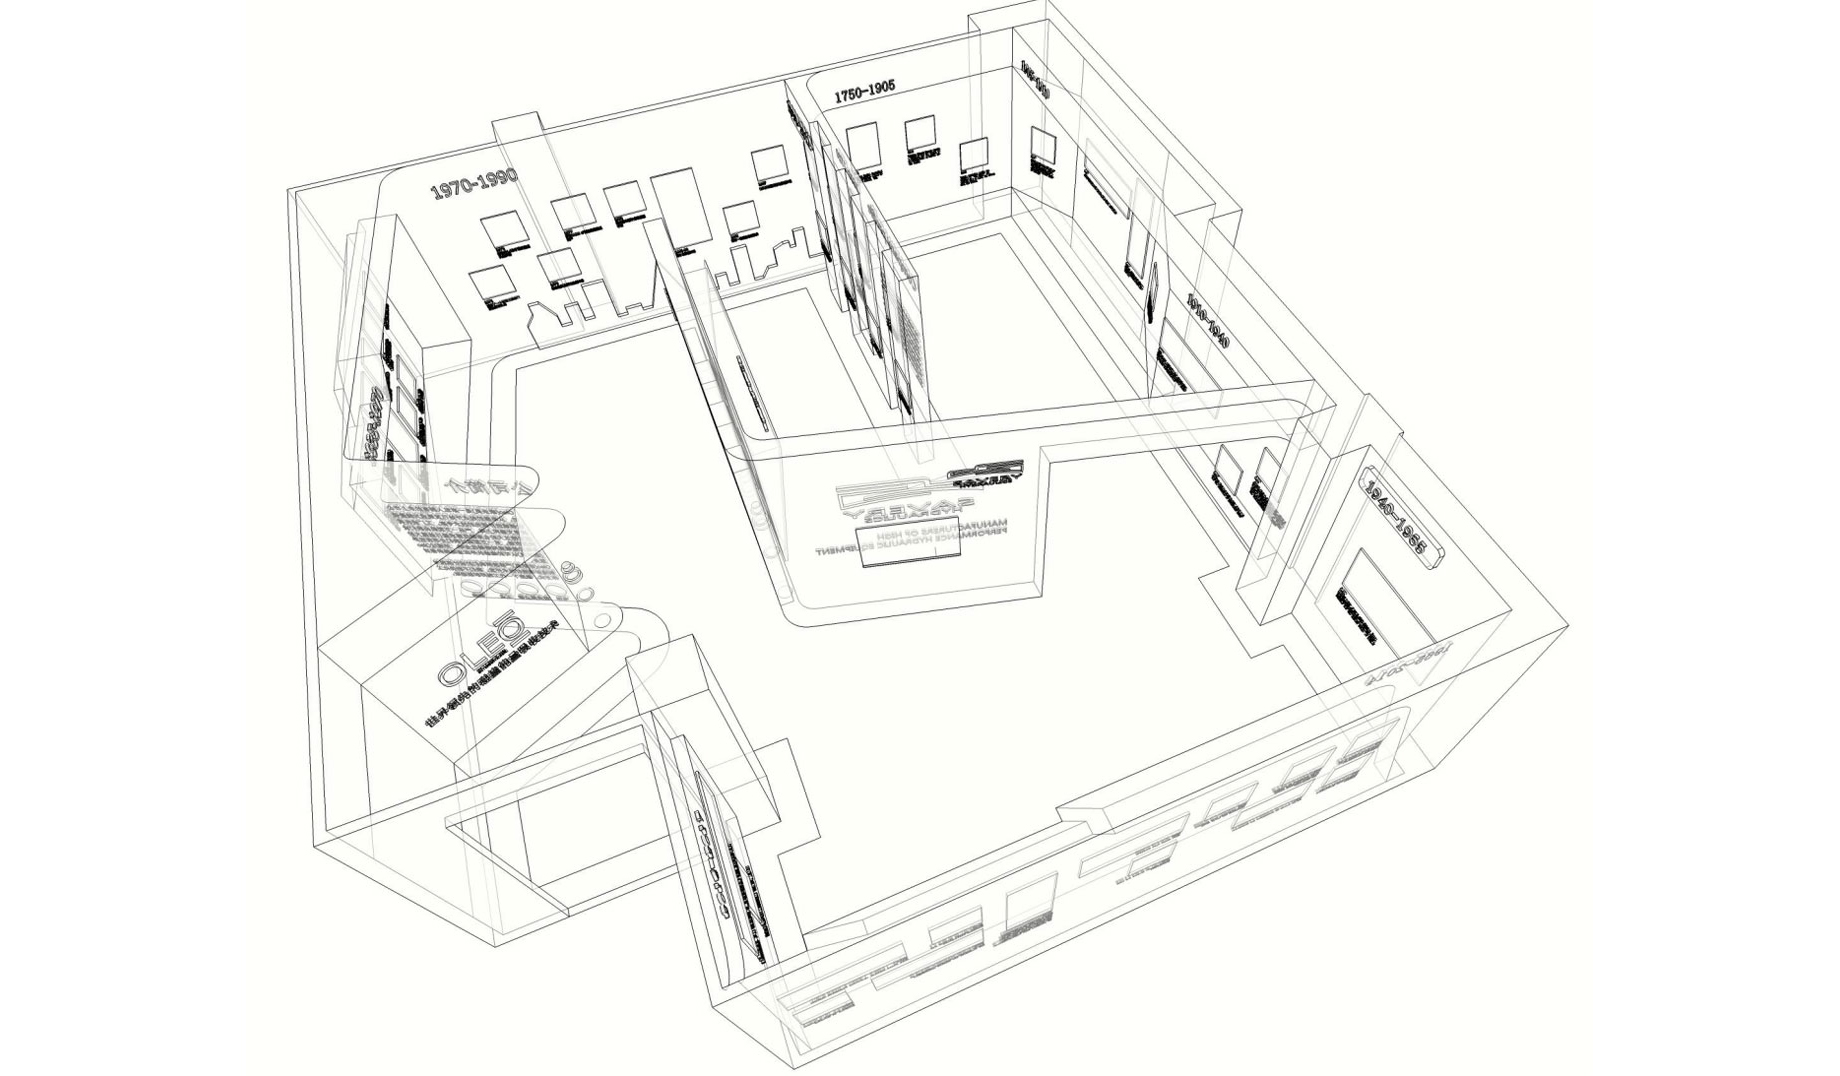 OLEO豪乐奥企业文化展厅设计-80平电梯减震展馆设计